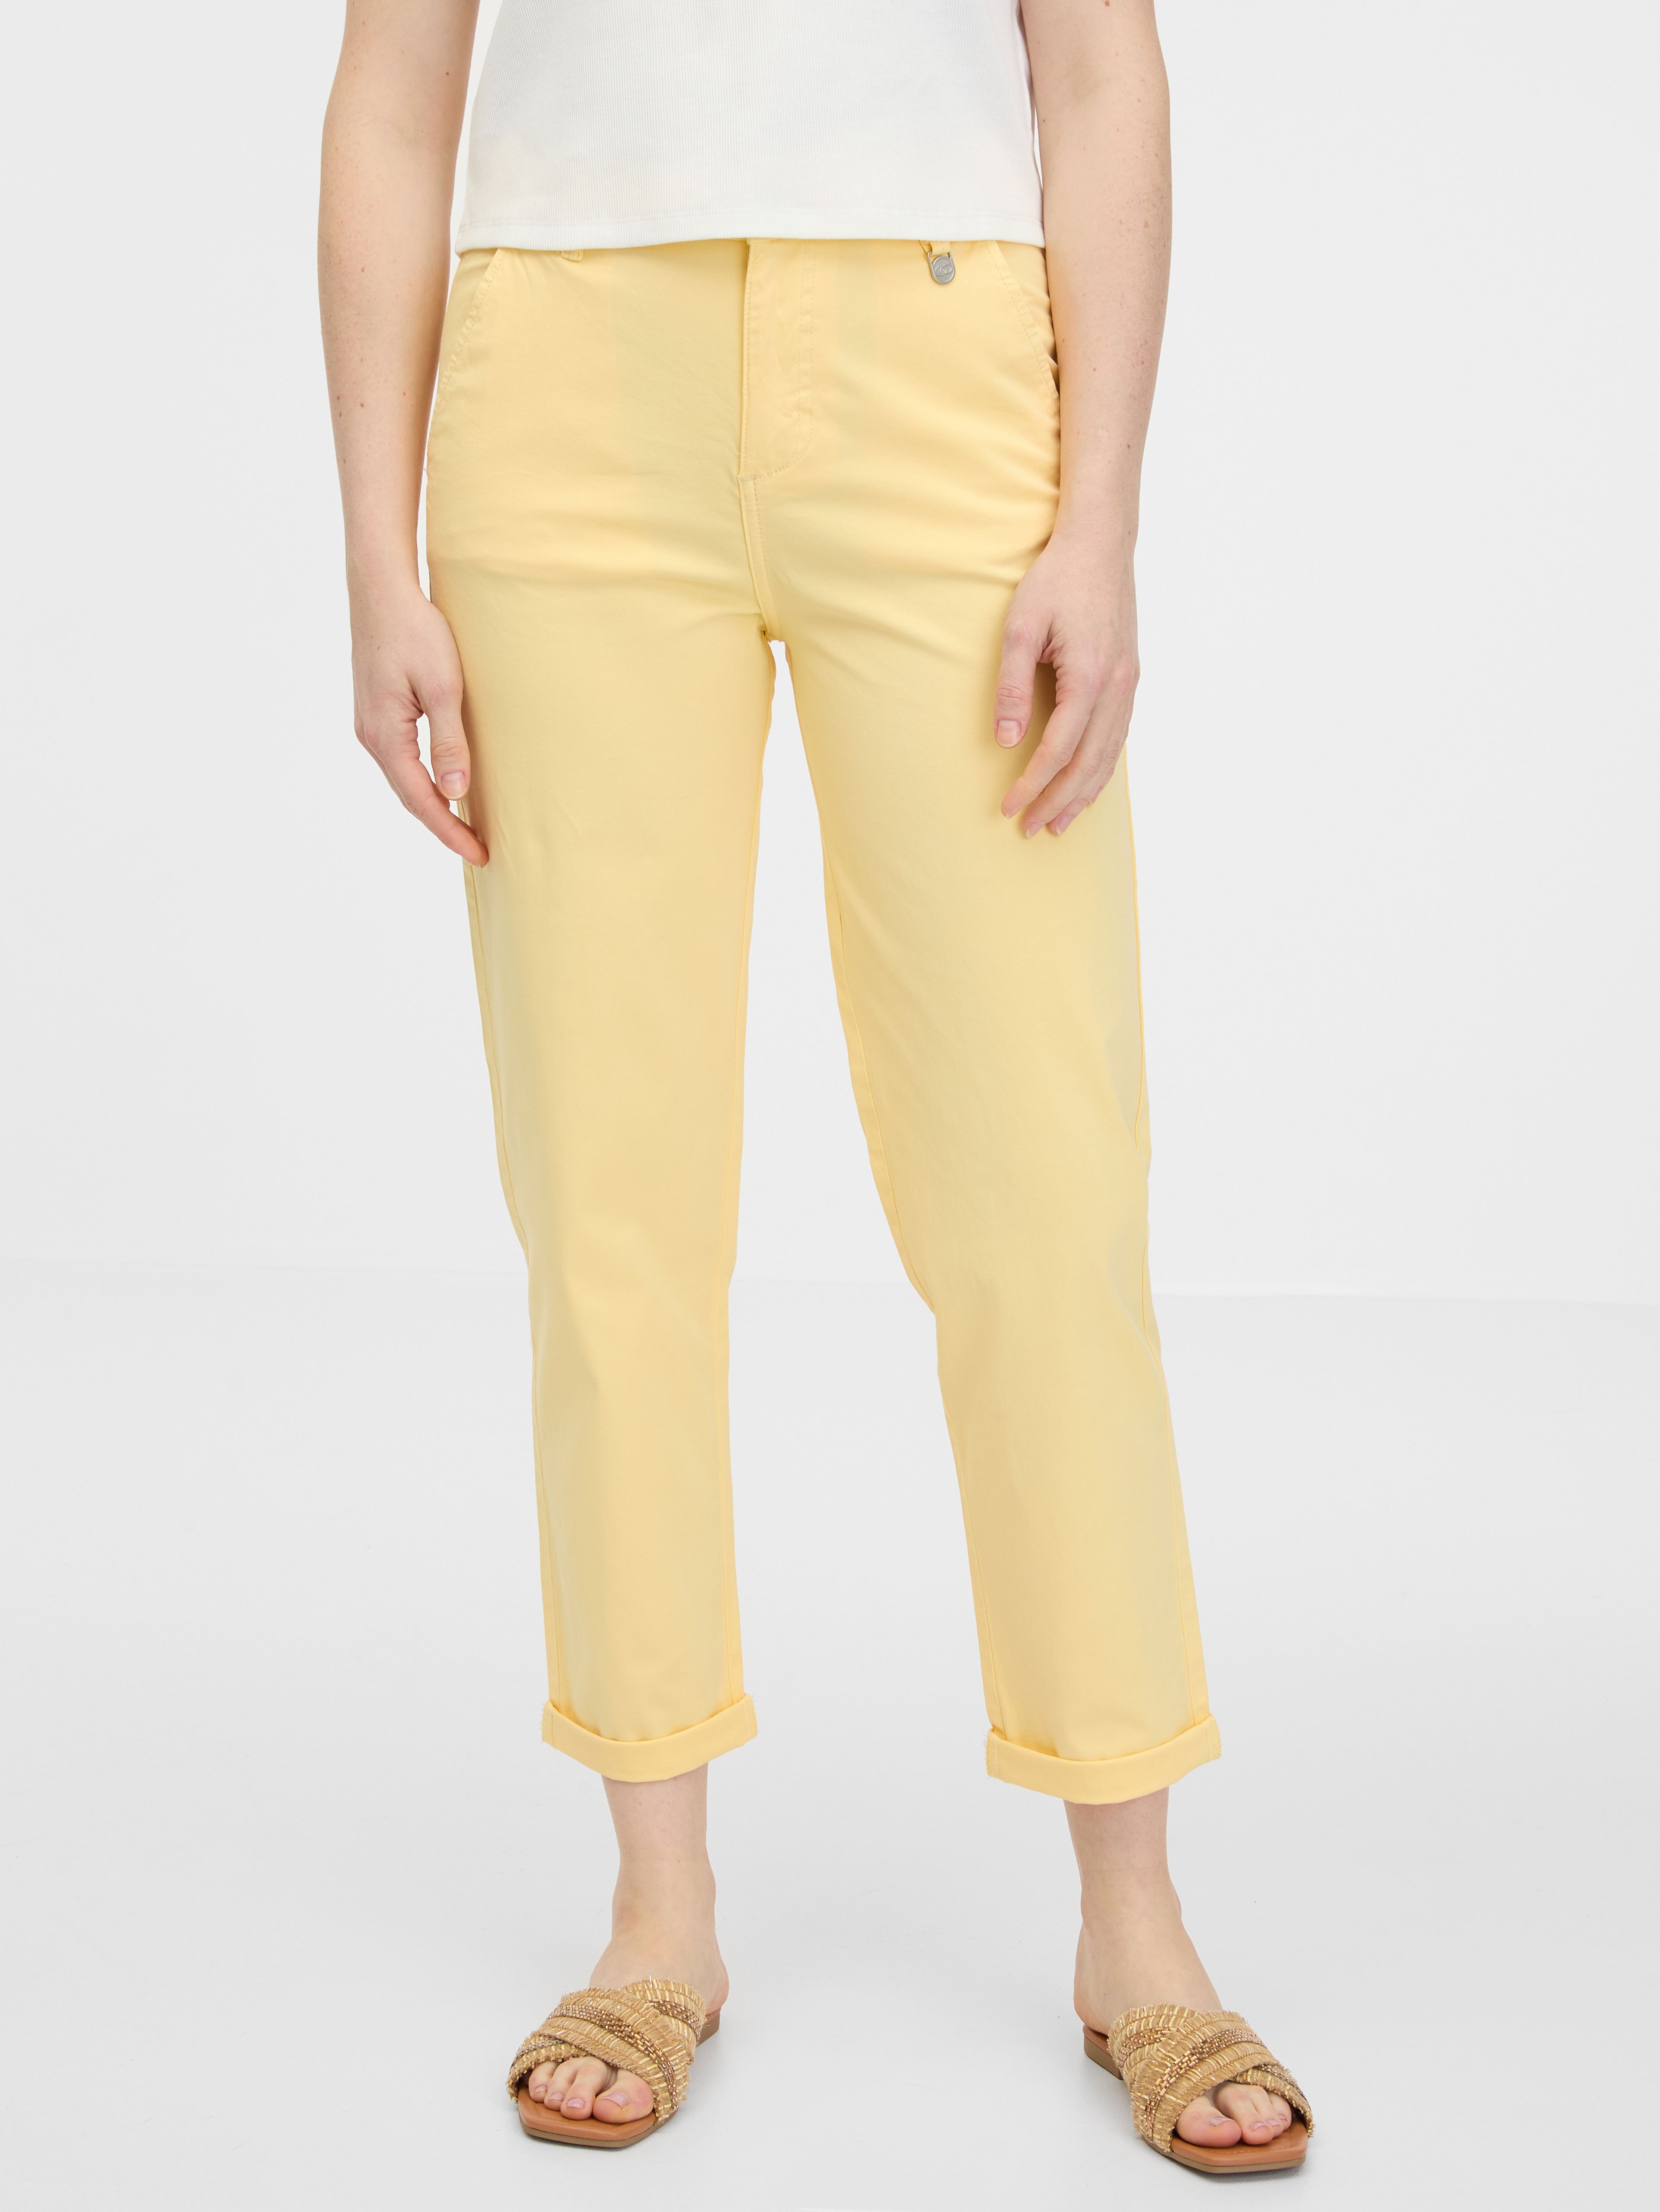 Rumene ženske hlače ORSAY